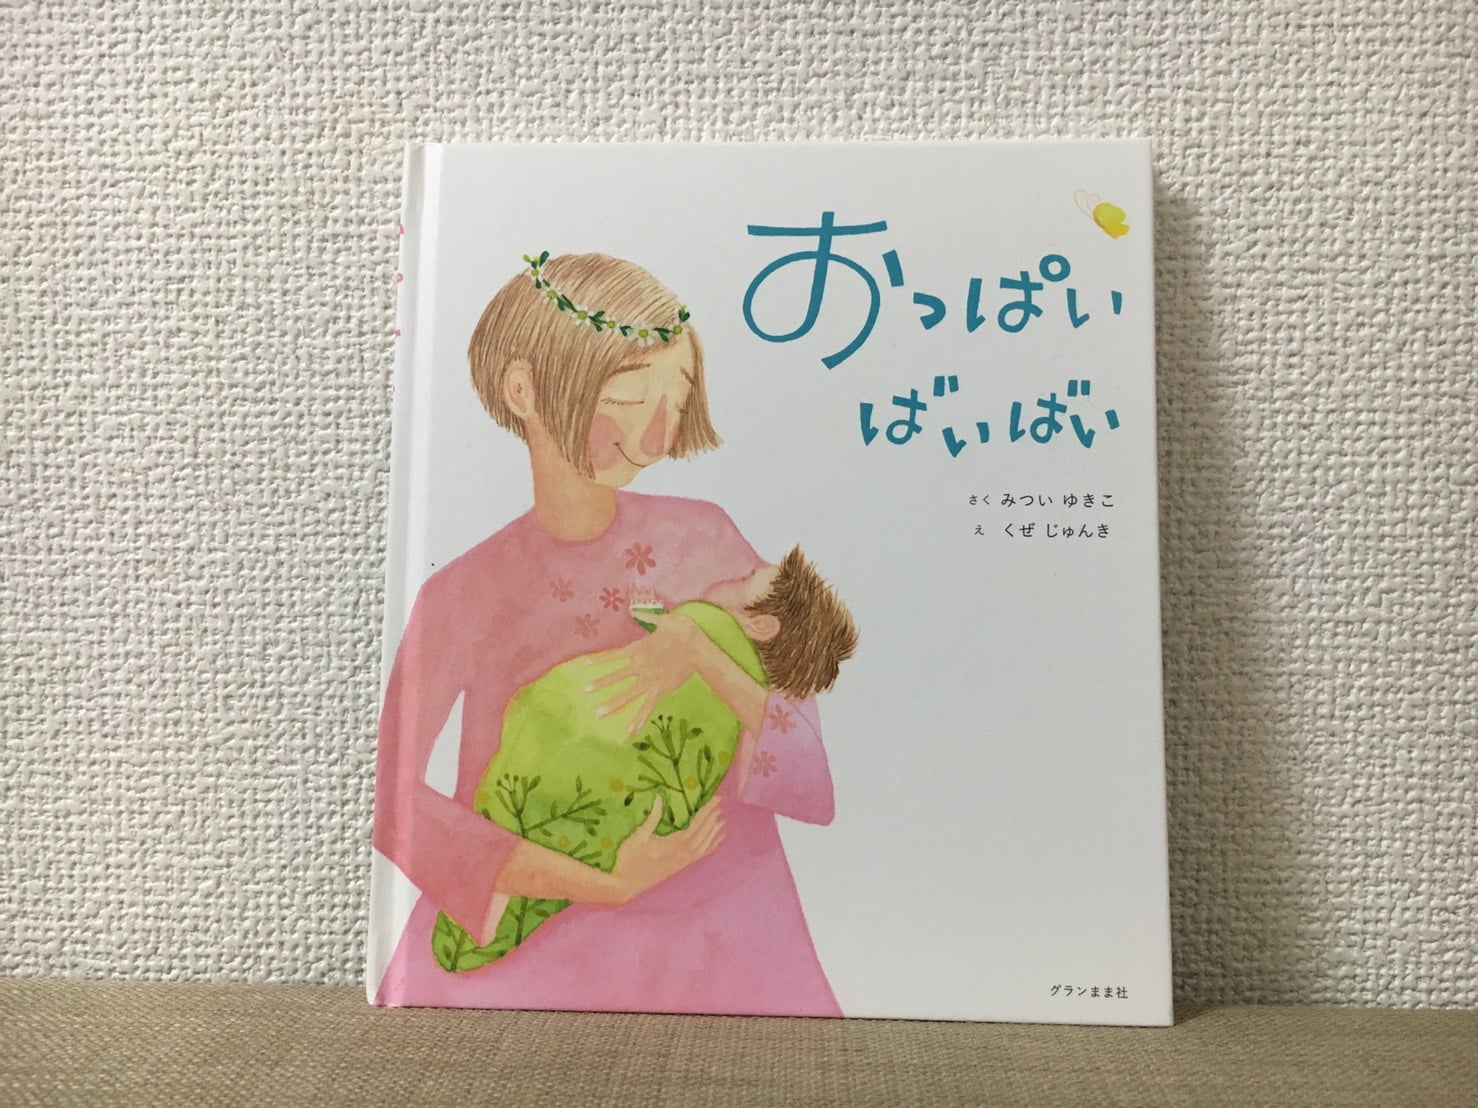 卒乳の時期が近づいたママに贈る絵本『おっぱいばいばい』 | ママスタ